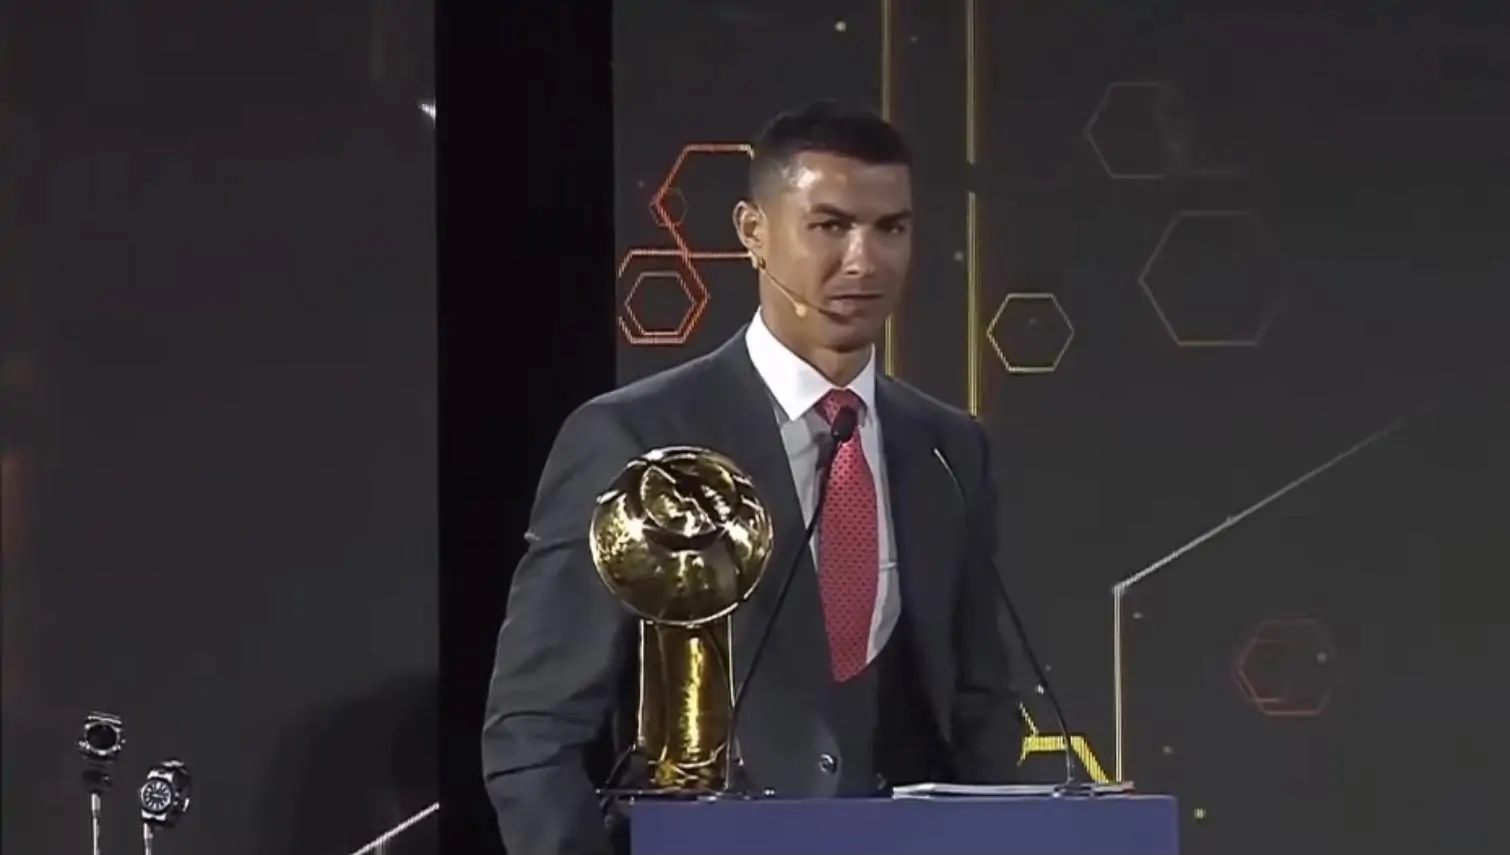 Globe Soccer Awards 2020: Cristiano Ronaldo sotto accusa